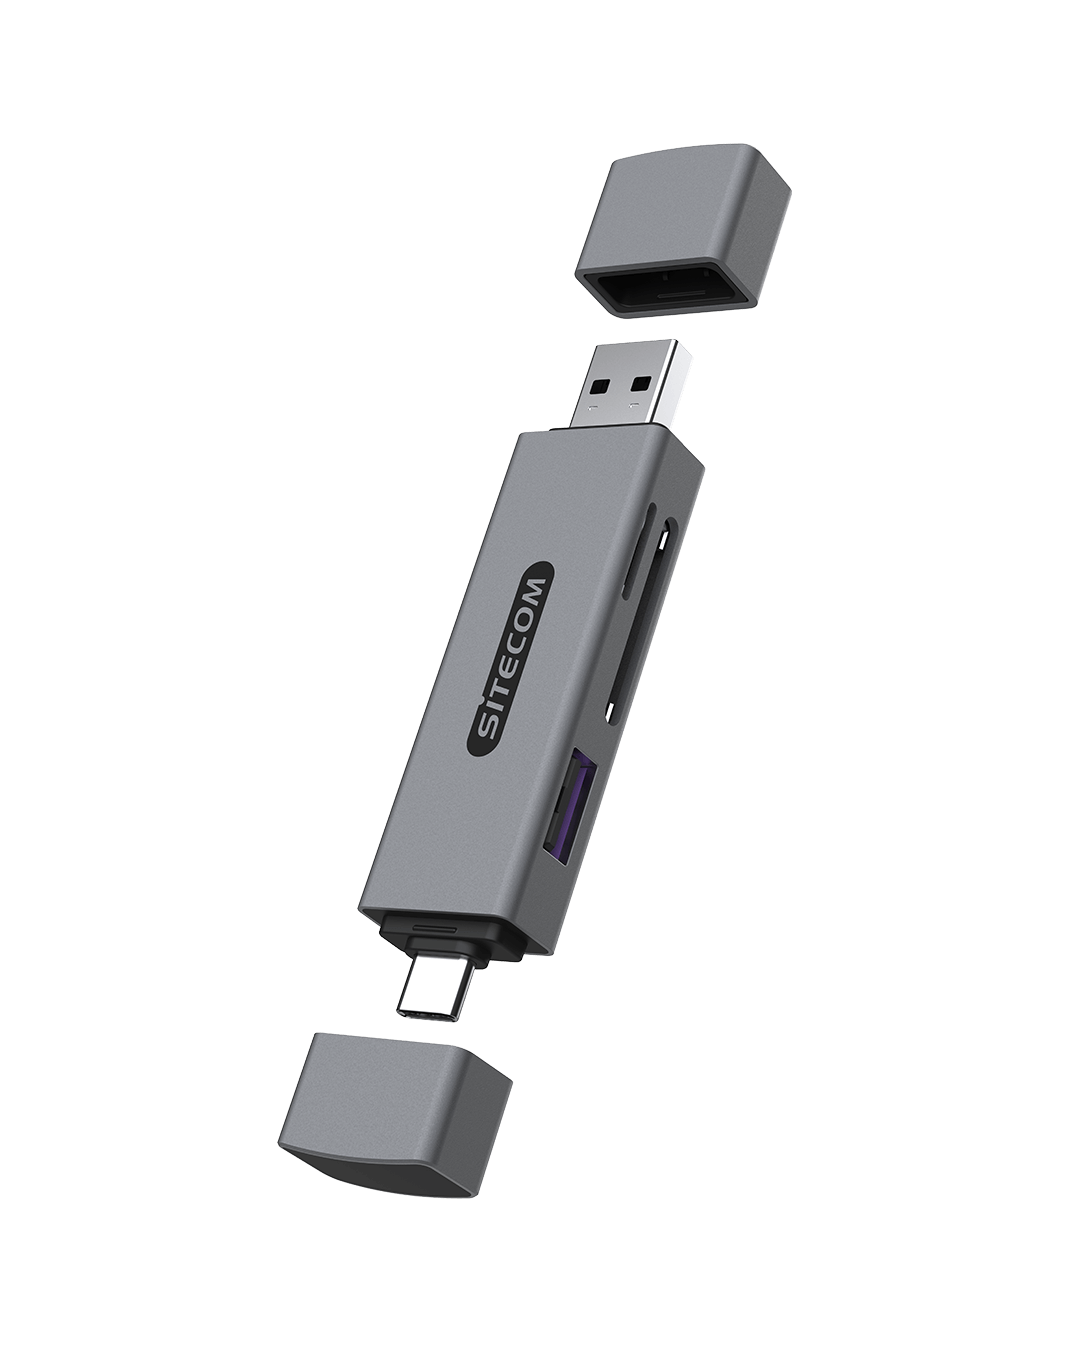 Sitecom - USB-A + USB-C Stick Card Reader with USB Port - MD-1012